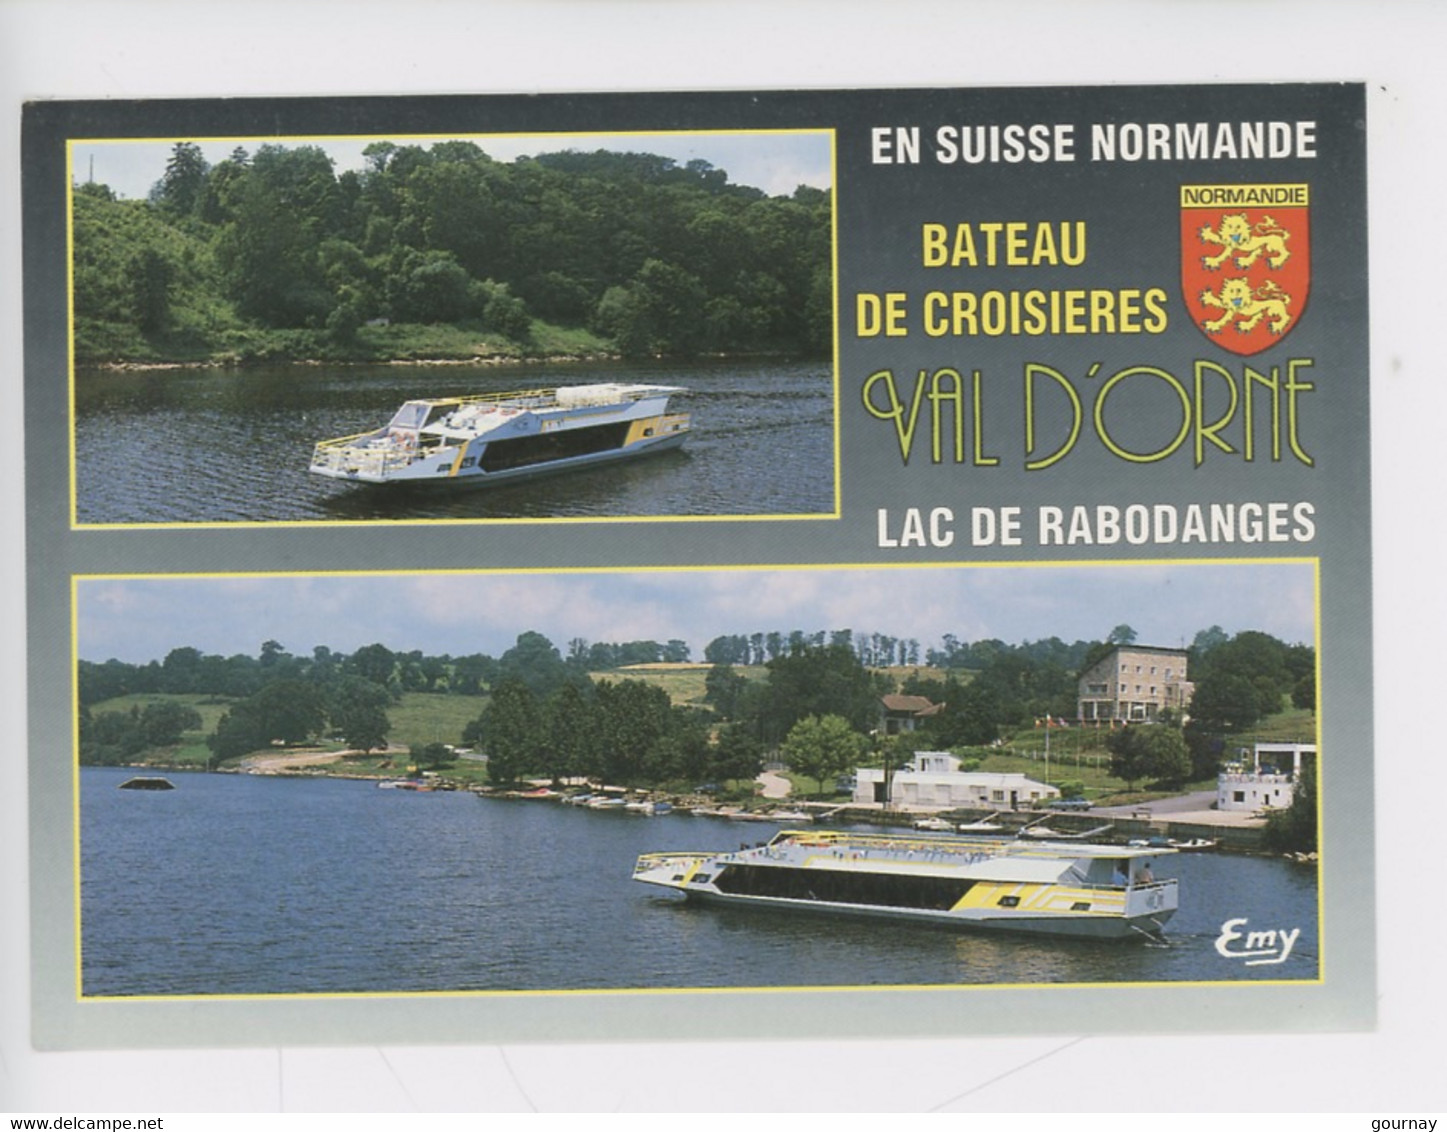 Bateau De Croisières - Lac De Rabodanges, Val D'orne En Suisse Normande (Putanges Pont Ecrepin) Cp Vierge - Putanges